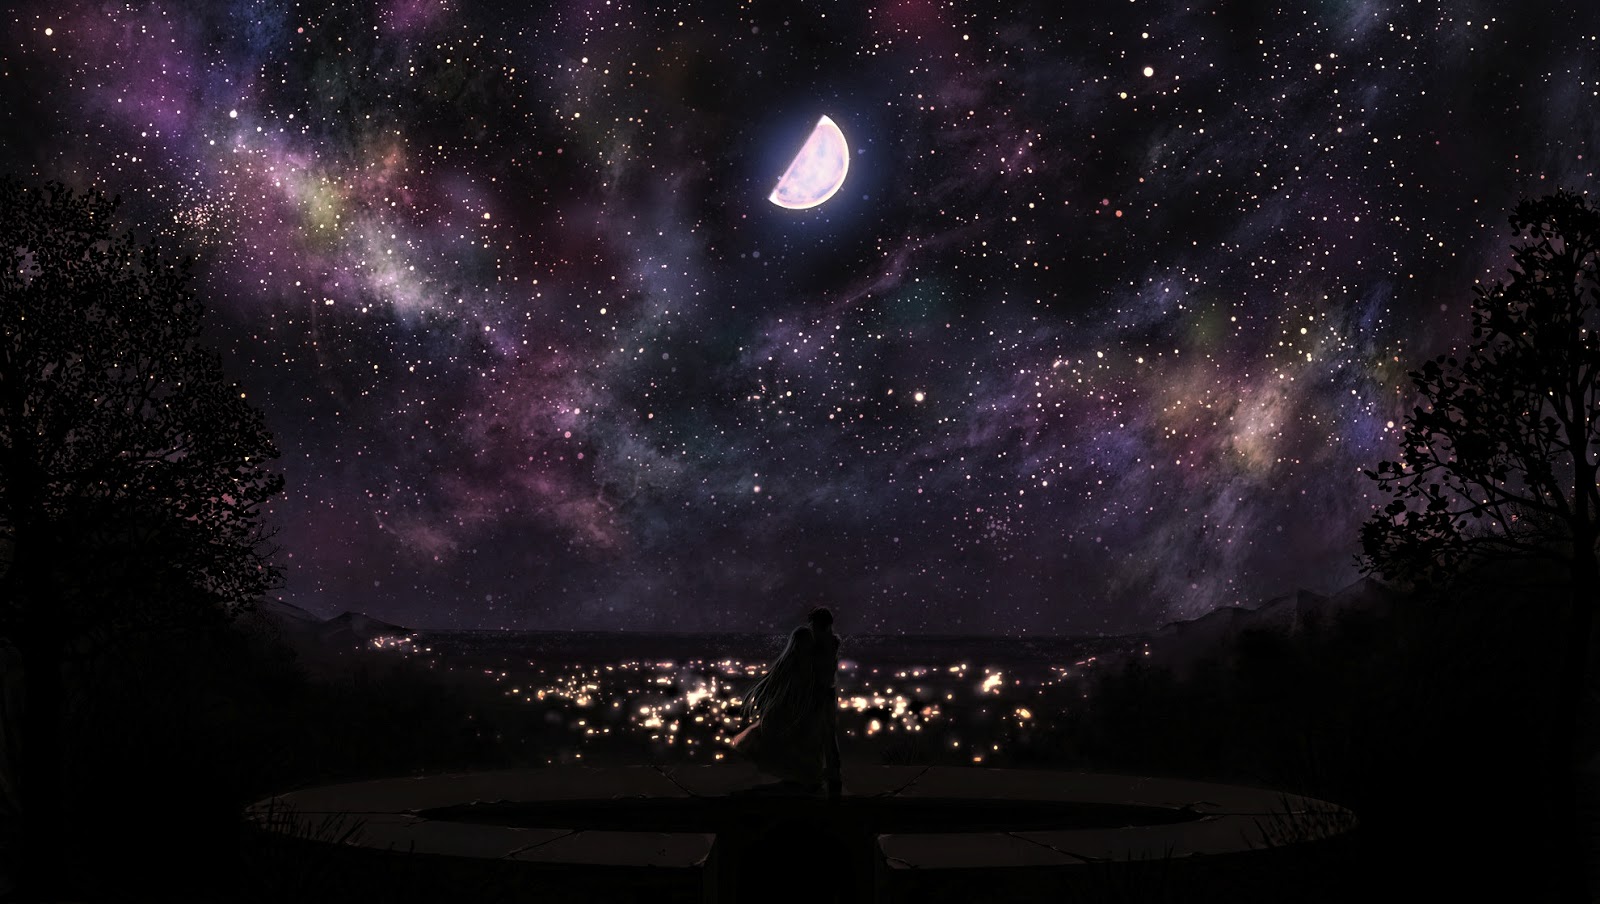 nacht anime wallpaper,himmel,natur,astronomisches objekt,universum,nacht